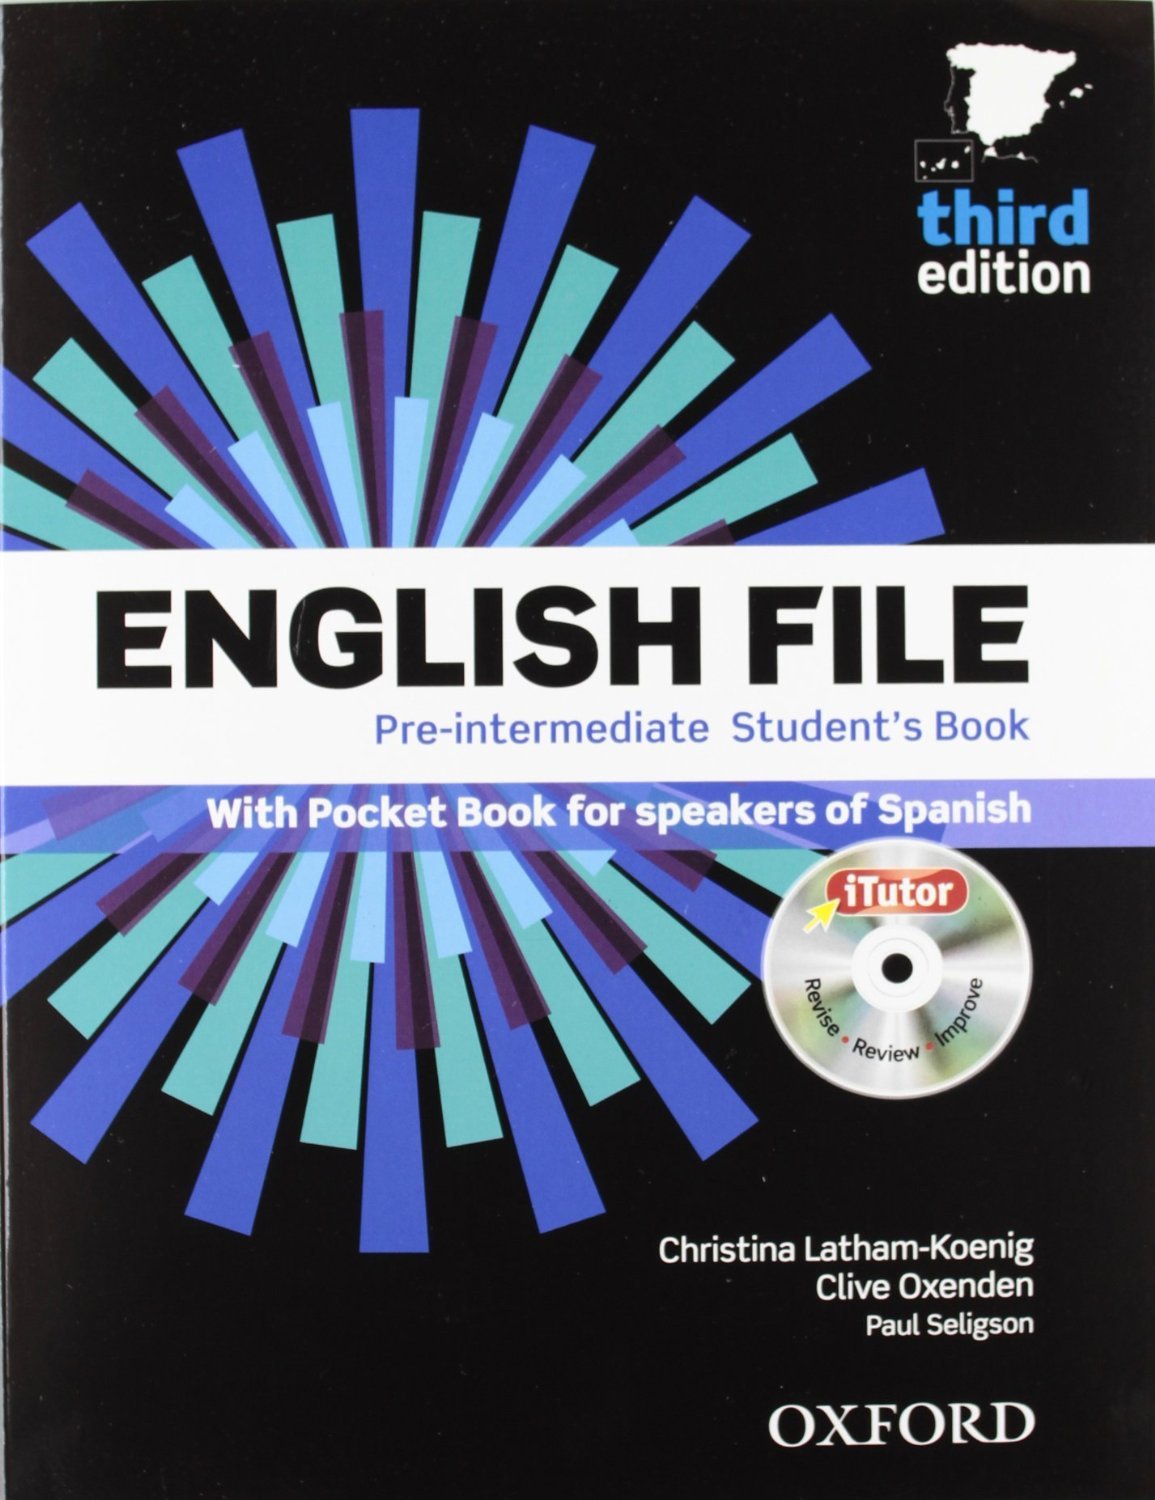 New english intermediate. EF pre Intermediate 3rd Edition. English file 3 издание pre-Intermediate. New English file 2rd Edition pre-Intermediate. English file third Edition (3 издание) - pre-Intermediate.